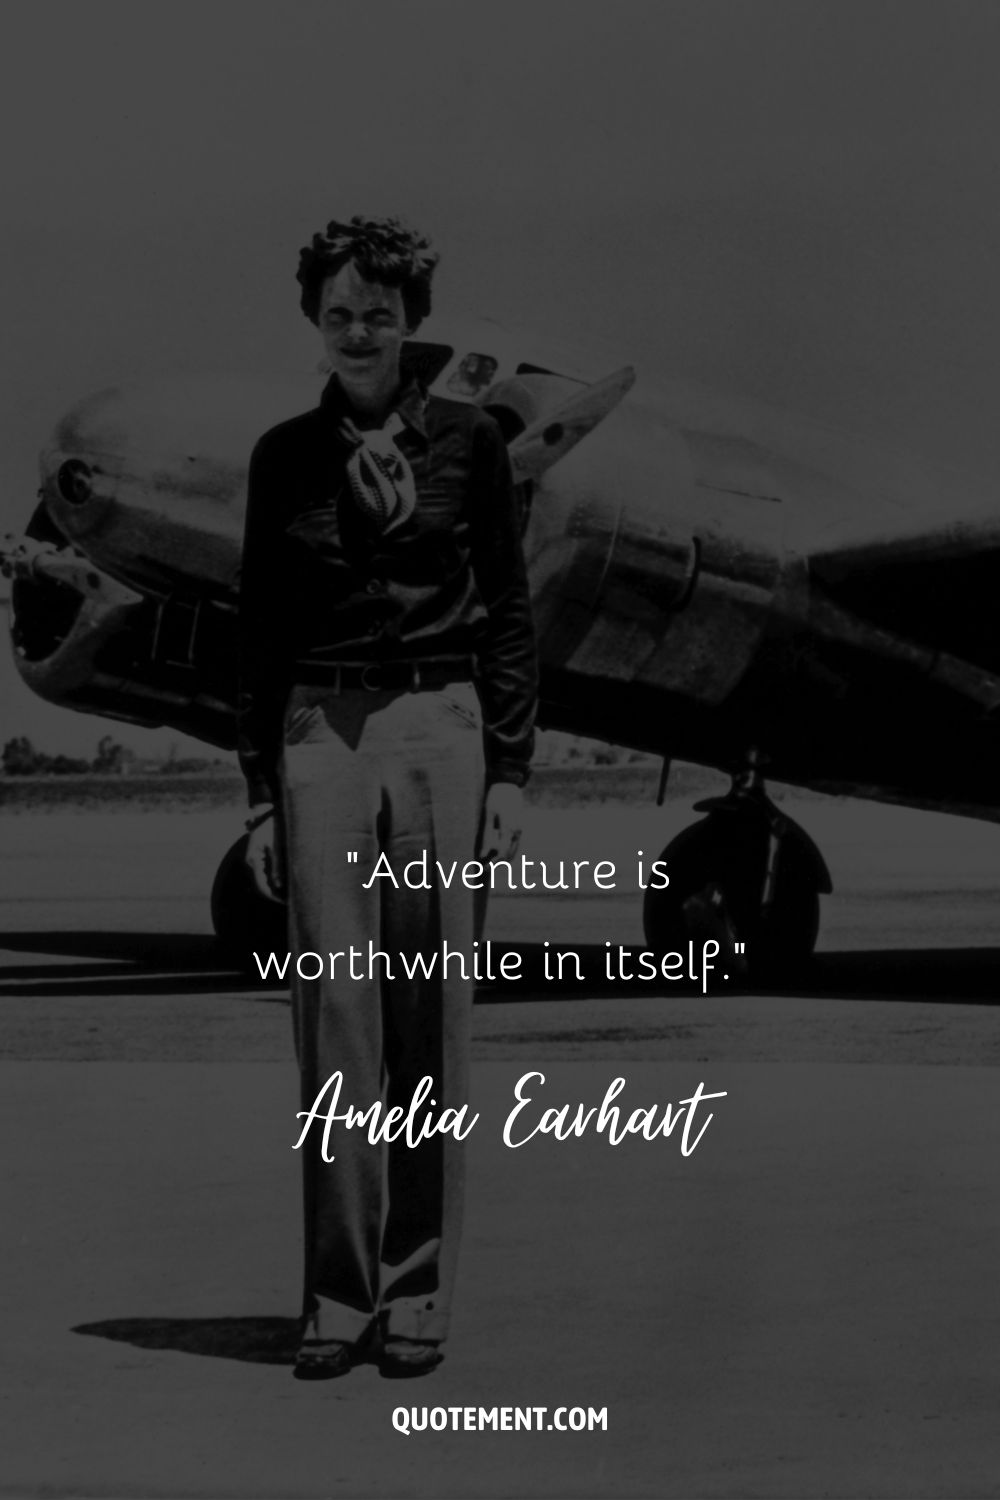 “Adventure is worthwhile in itself.” ― Amelia Earhart